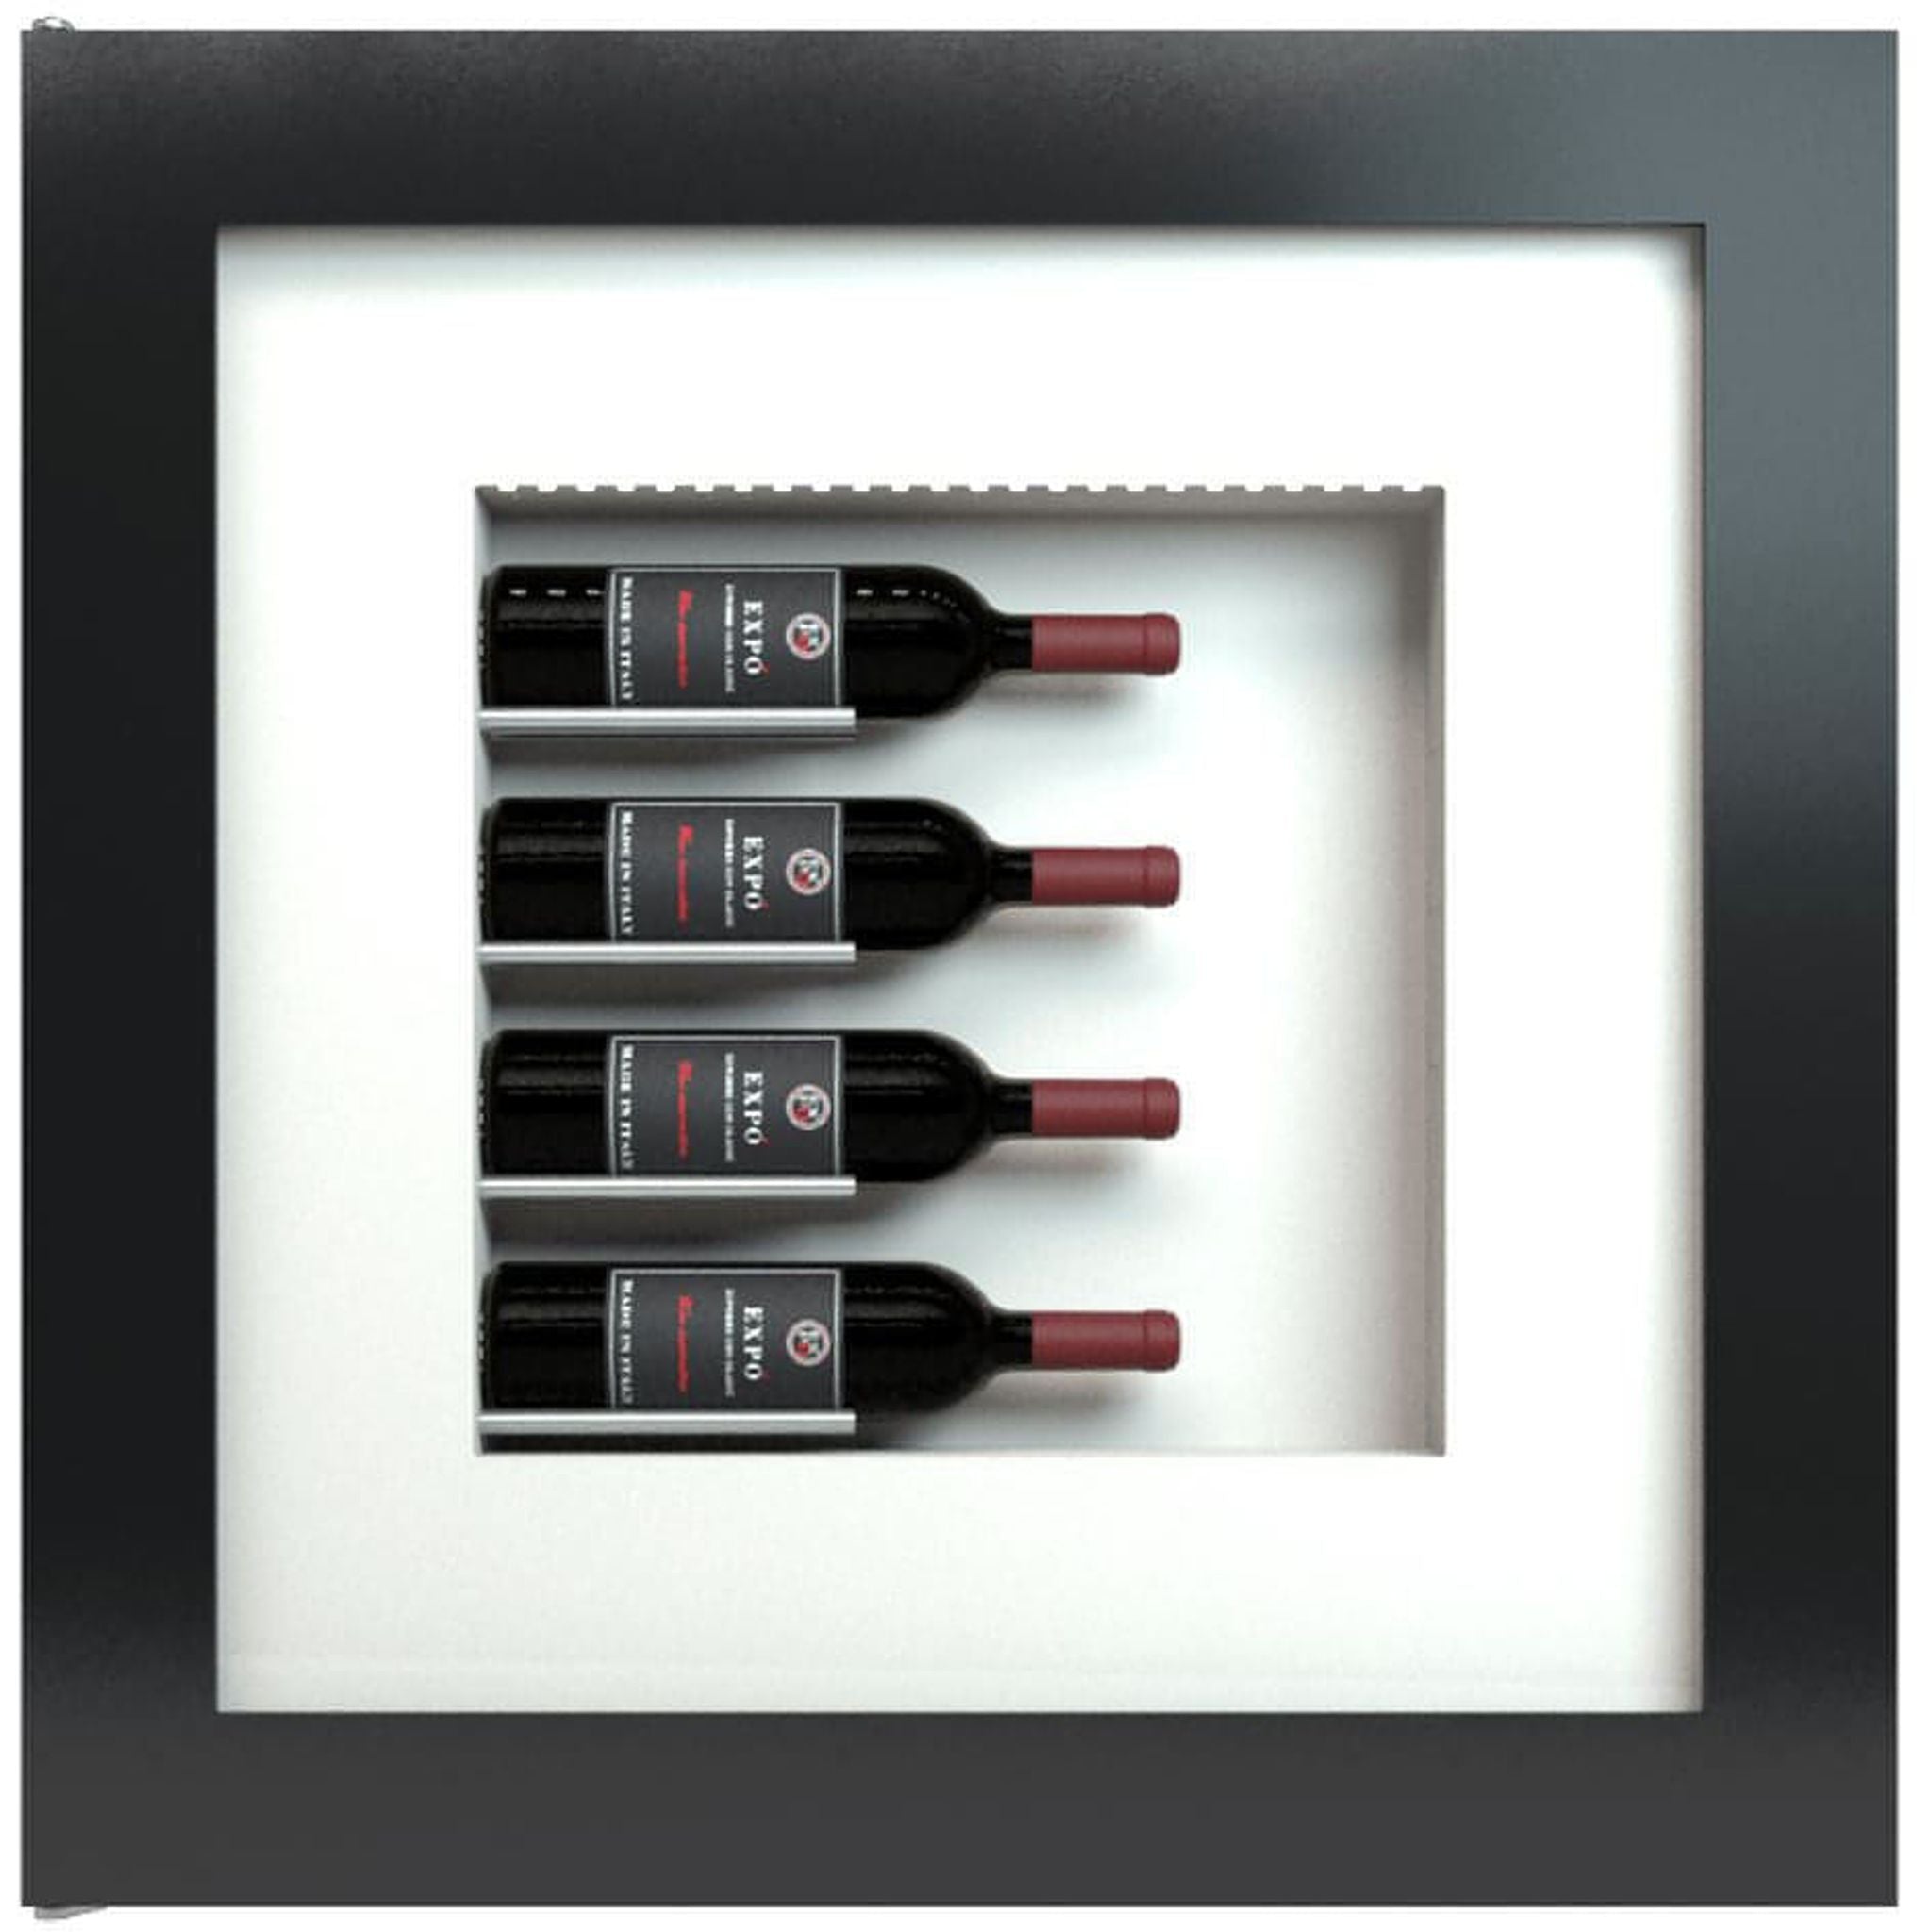 Quadro Vino - Wine Wall QV40 - 4 Bottle Display Unit